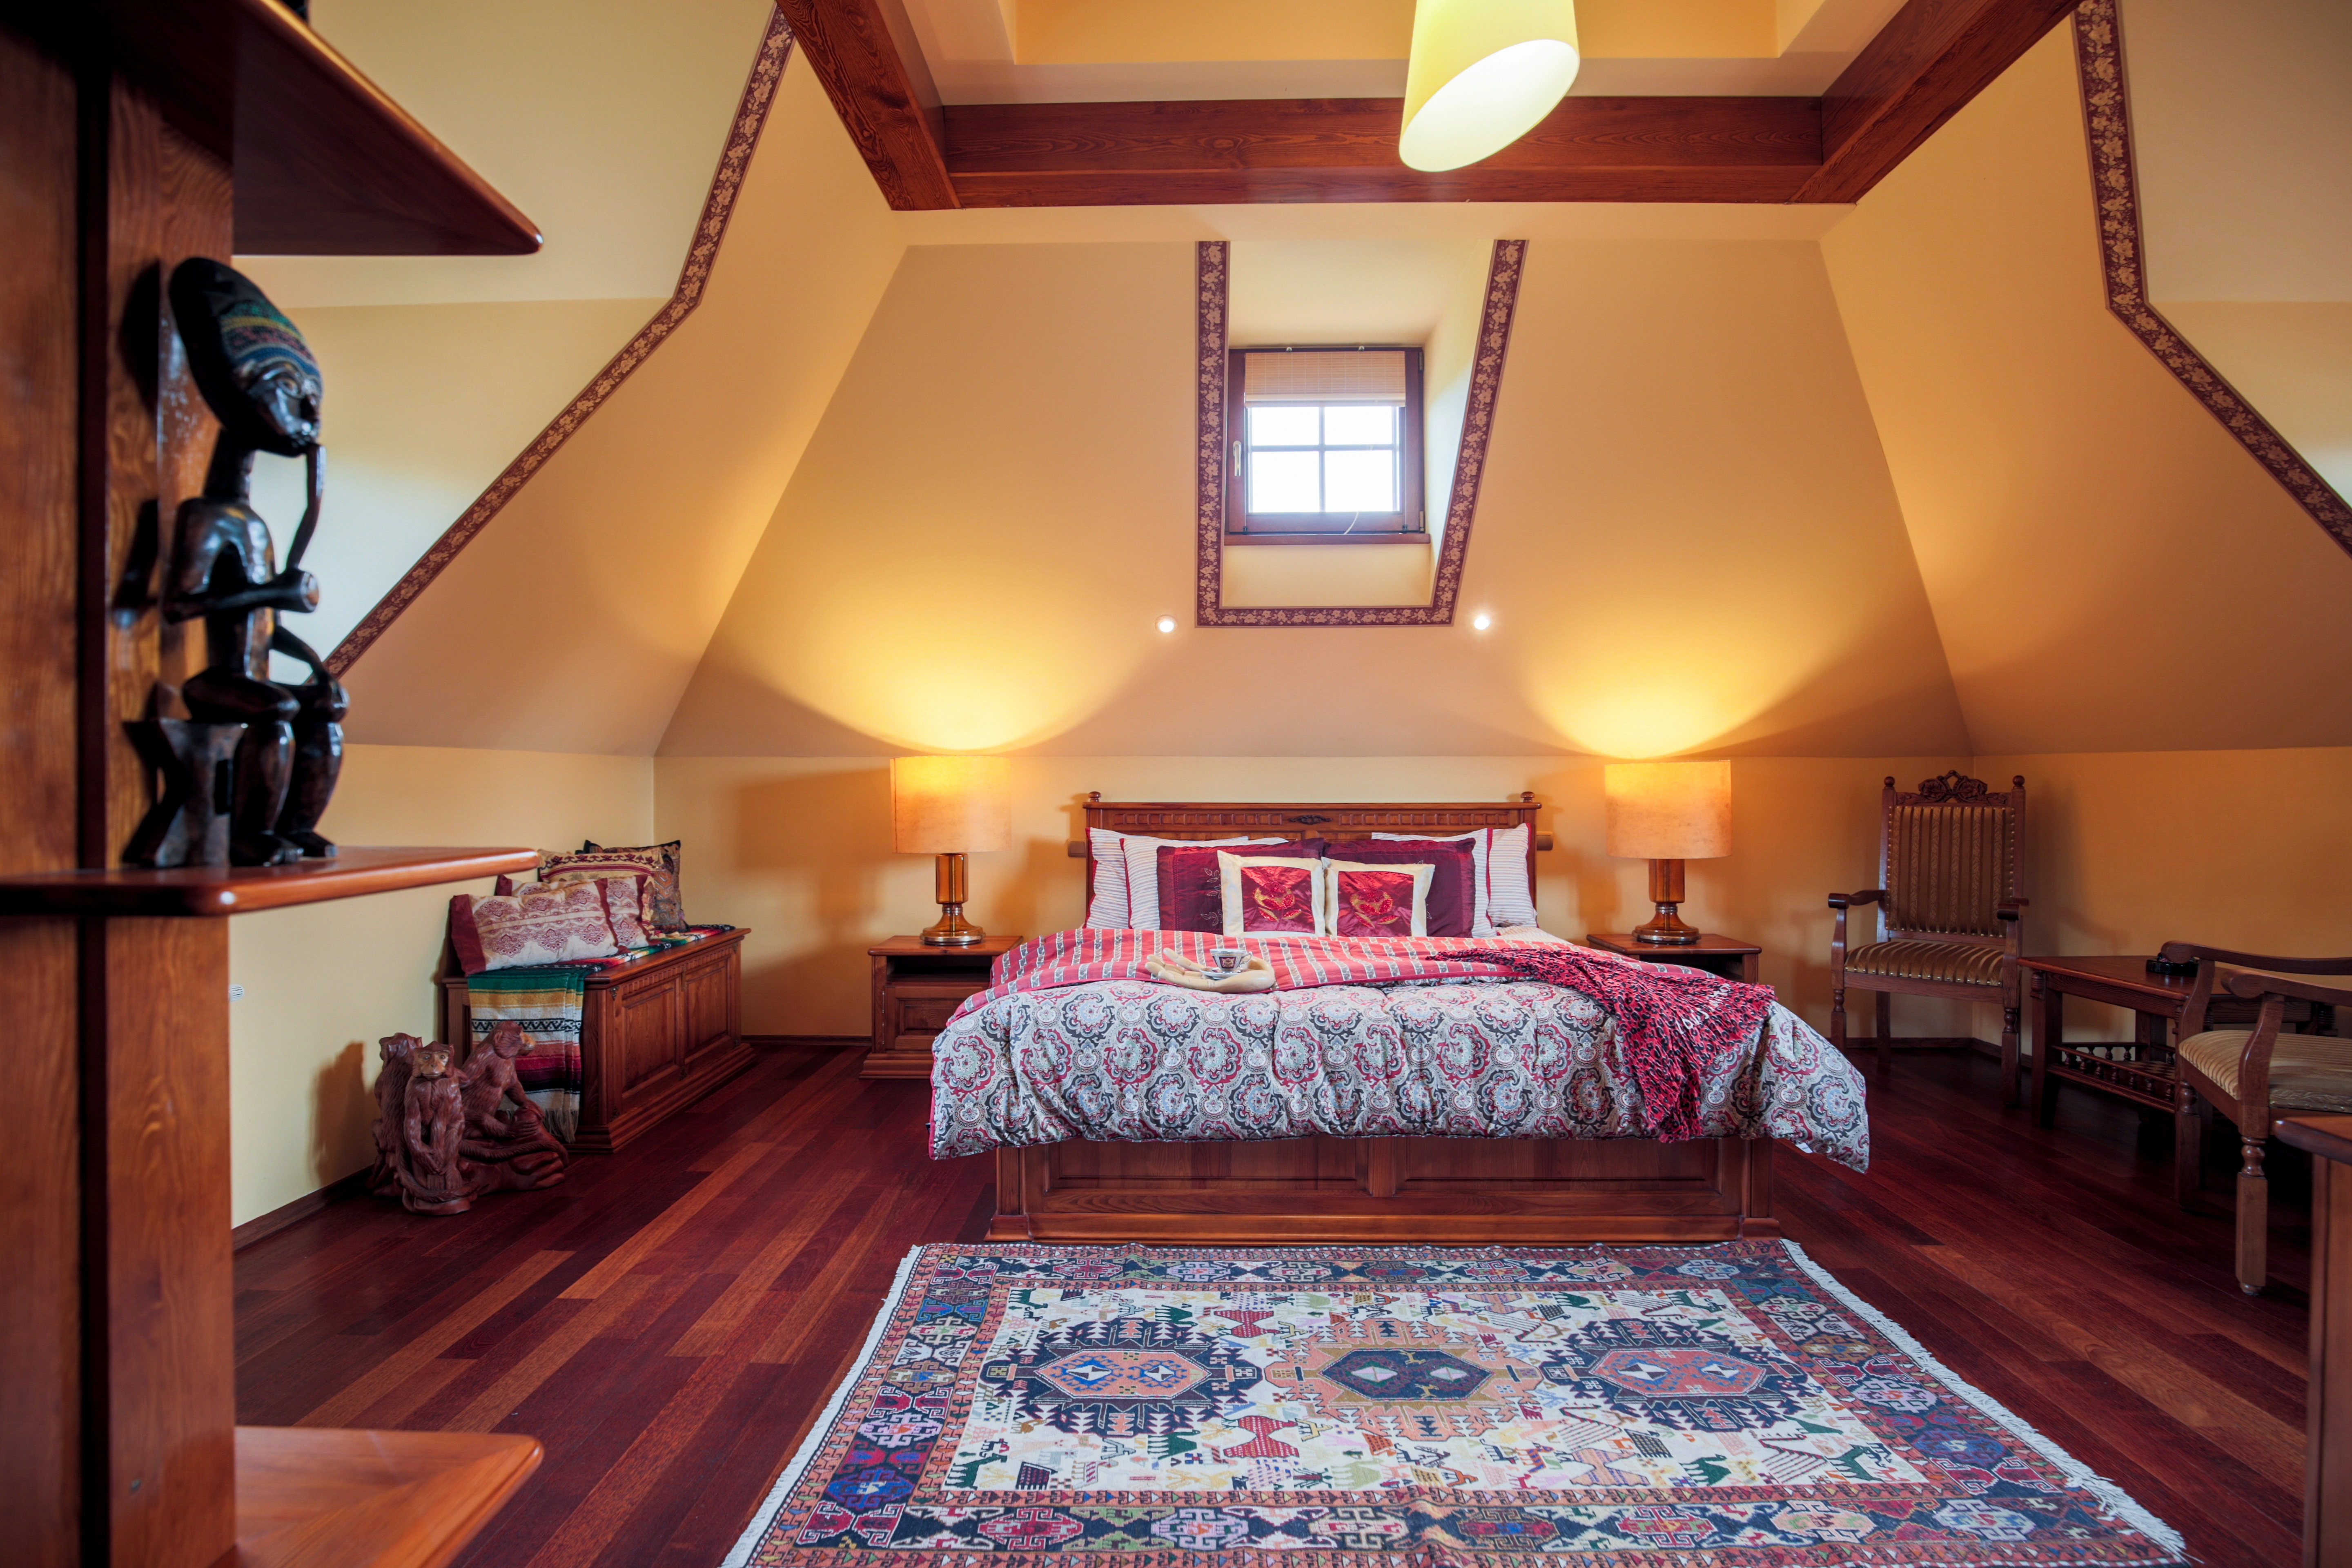 Inspiracja prezentująca sypialnię w kolorze beżowym z kolorowym dywanem, styl kolonialny. Element charakterystyczny: kolorowy dywan